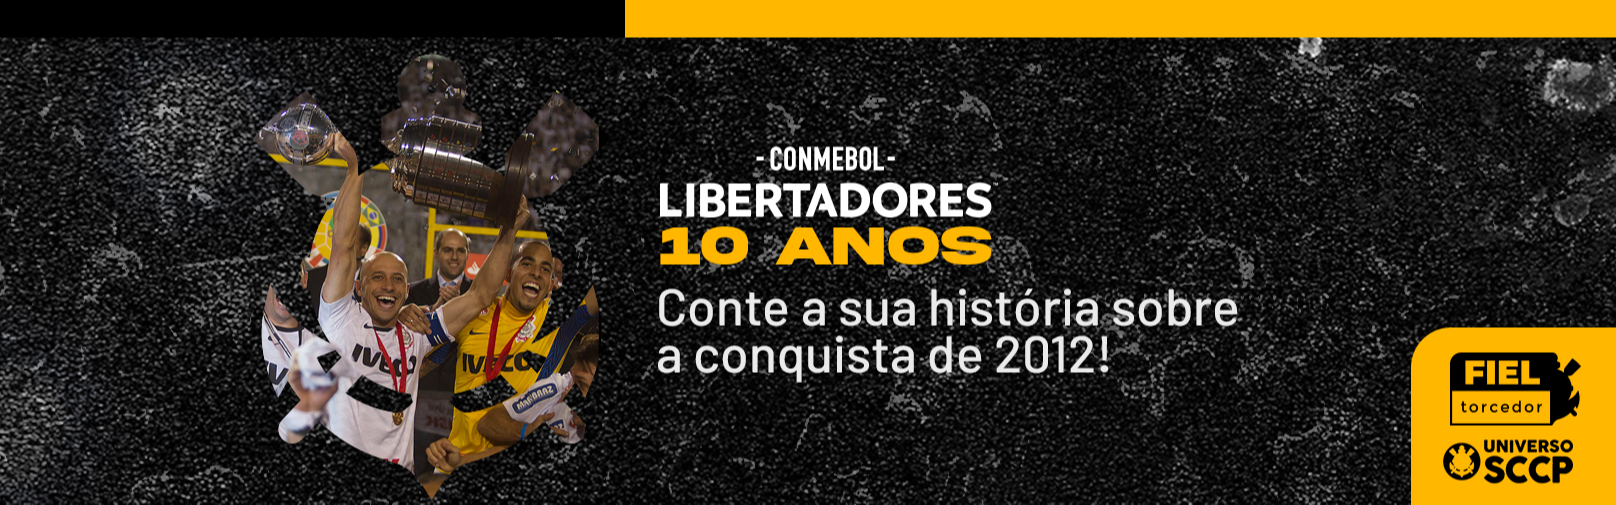 Histórias da Libertadores - Ação exclusiva para membros do FT no Universo SCCP